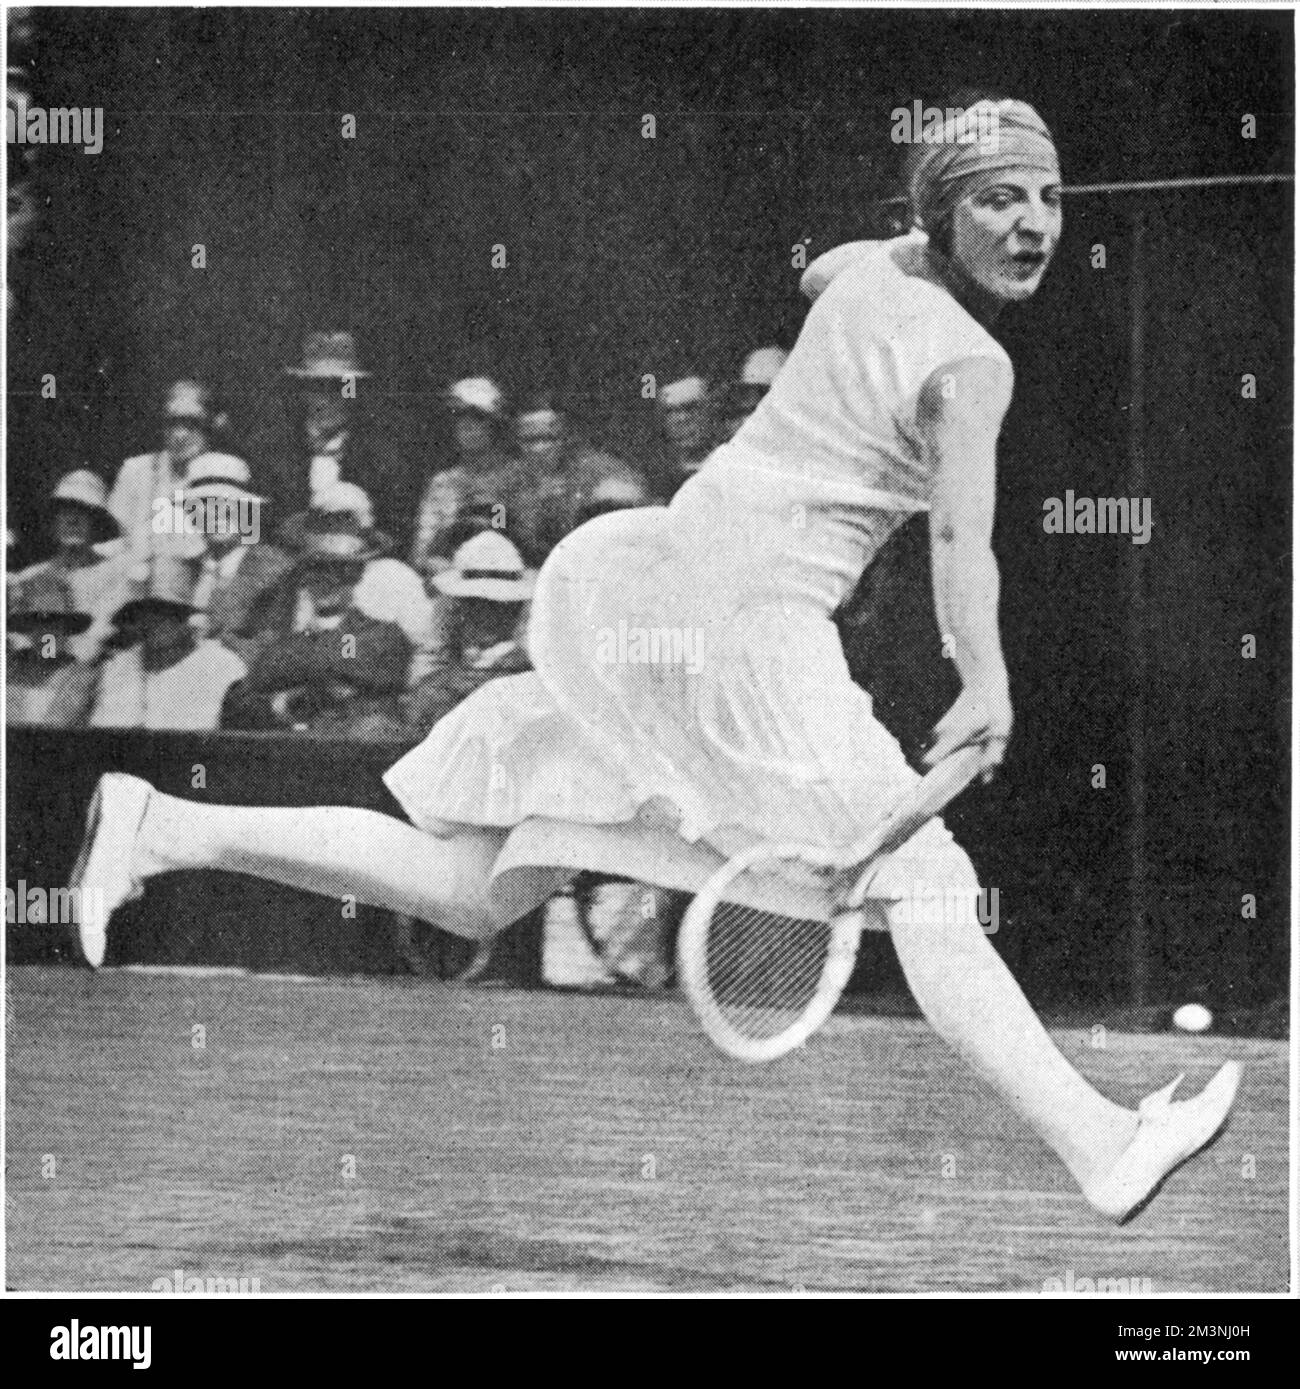 Suzanne Lenglen (1899 - 1938), joueuse française de tennis, gagnante de 81 titres de singles en 1920s. Photographié sur le terrain pour une balle et portant son bandeau caractéristique lors de la finale des dames de Wimbledon 1925 qu'elle a gagnée, battant Mlle Joan Fry. Date: 1925 Banque D'Images